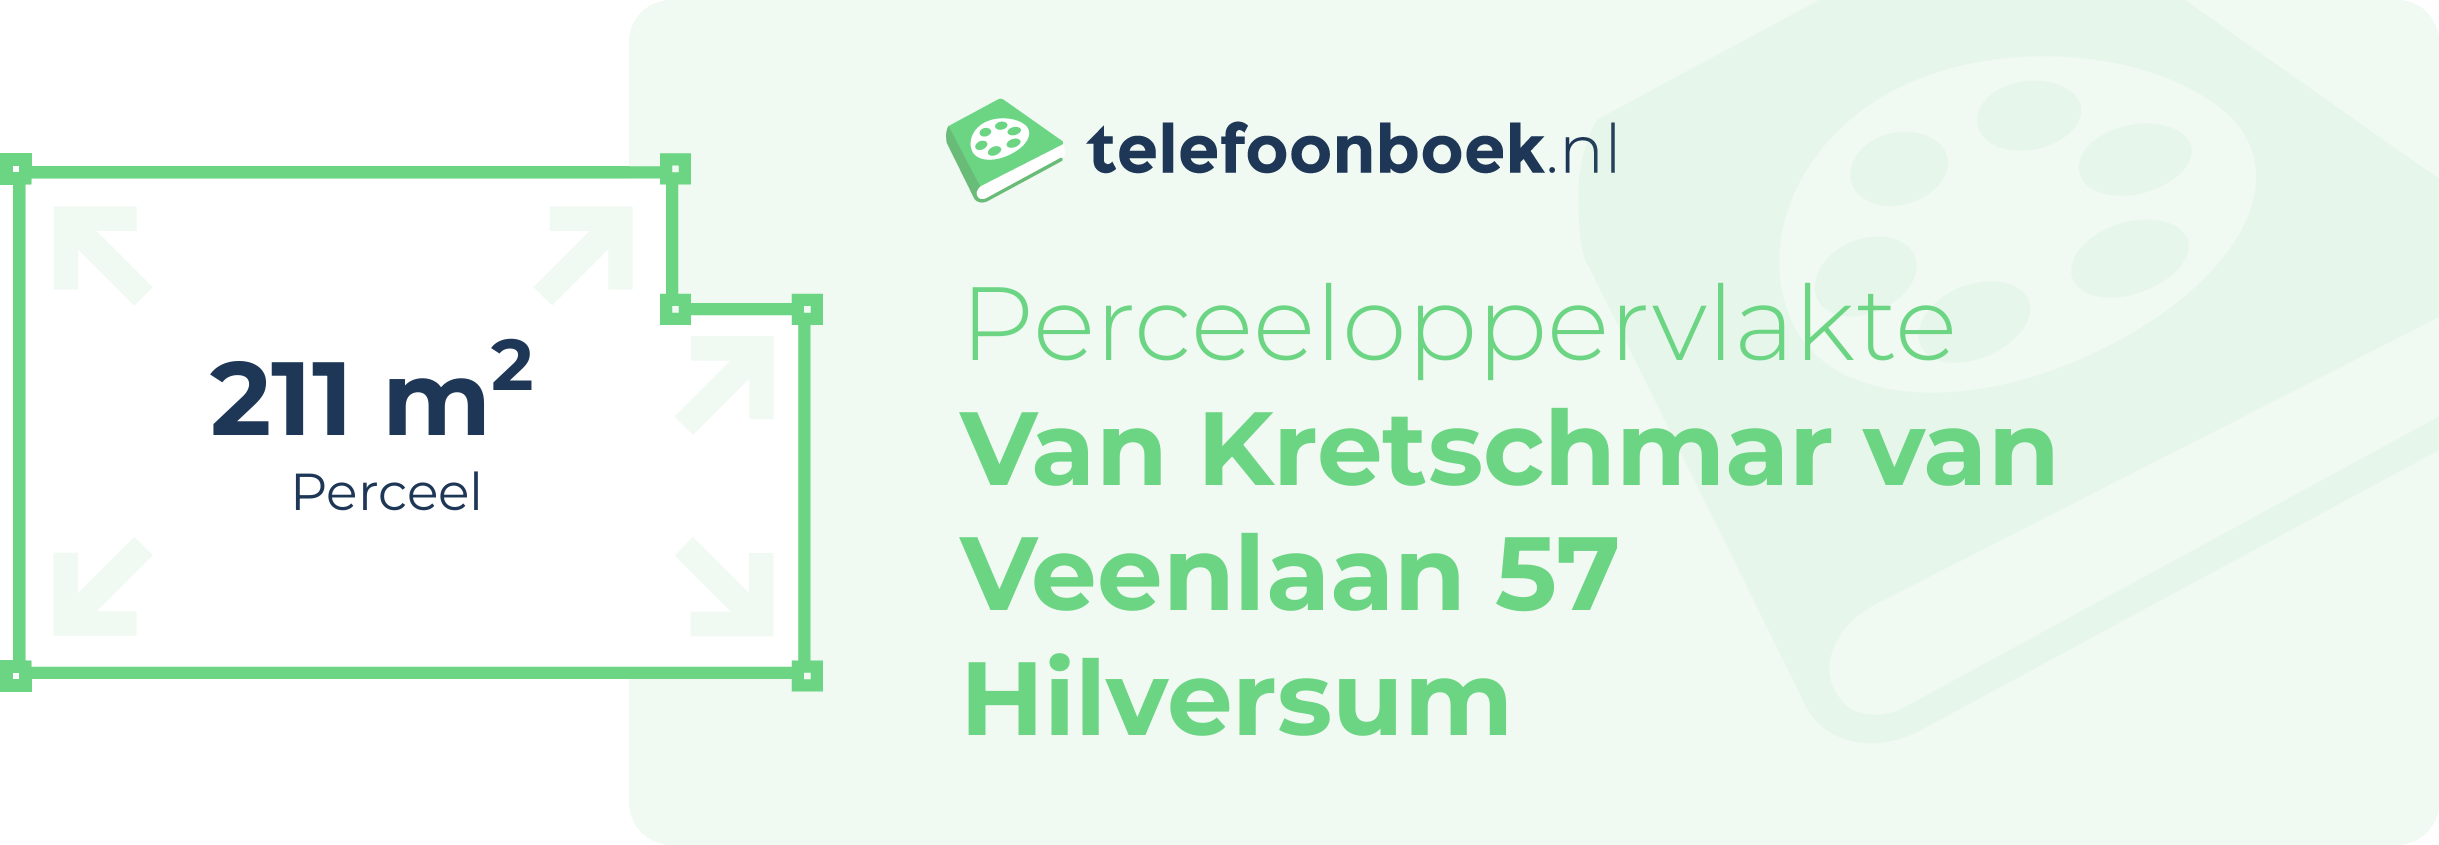 Perceeloppervlakte Van Kretschmar Van Veenlaan 57 Hilversum